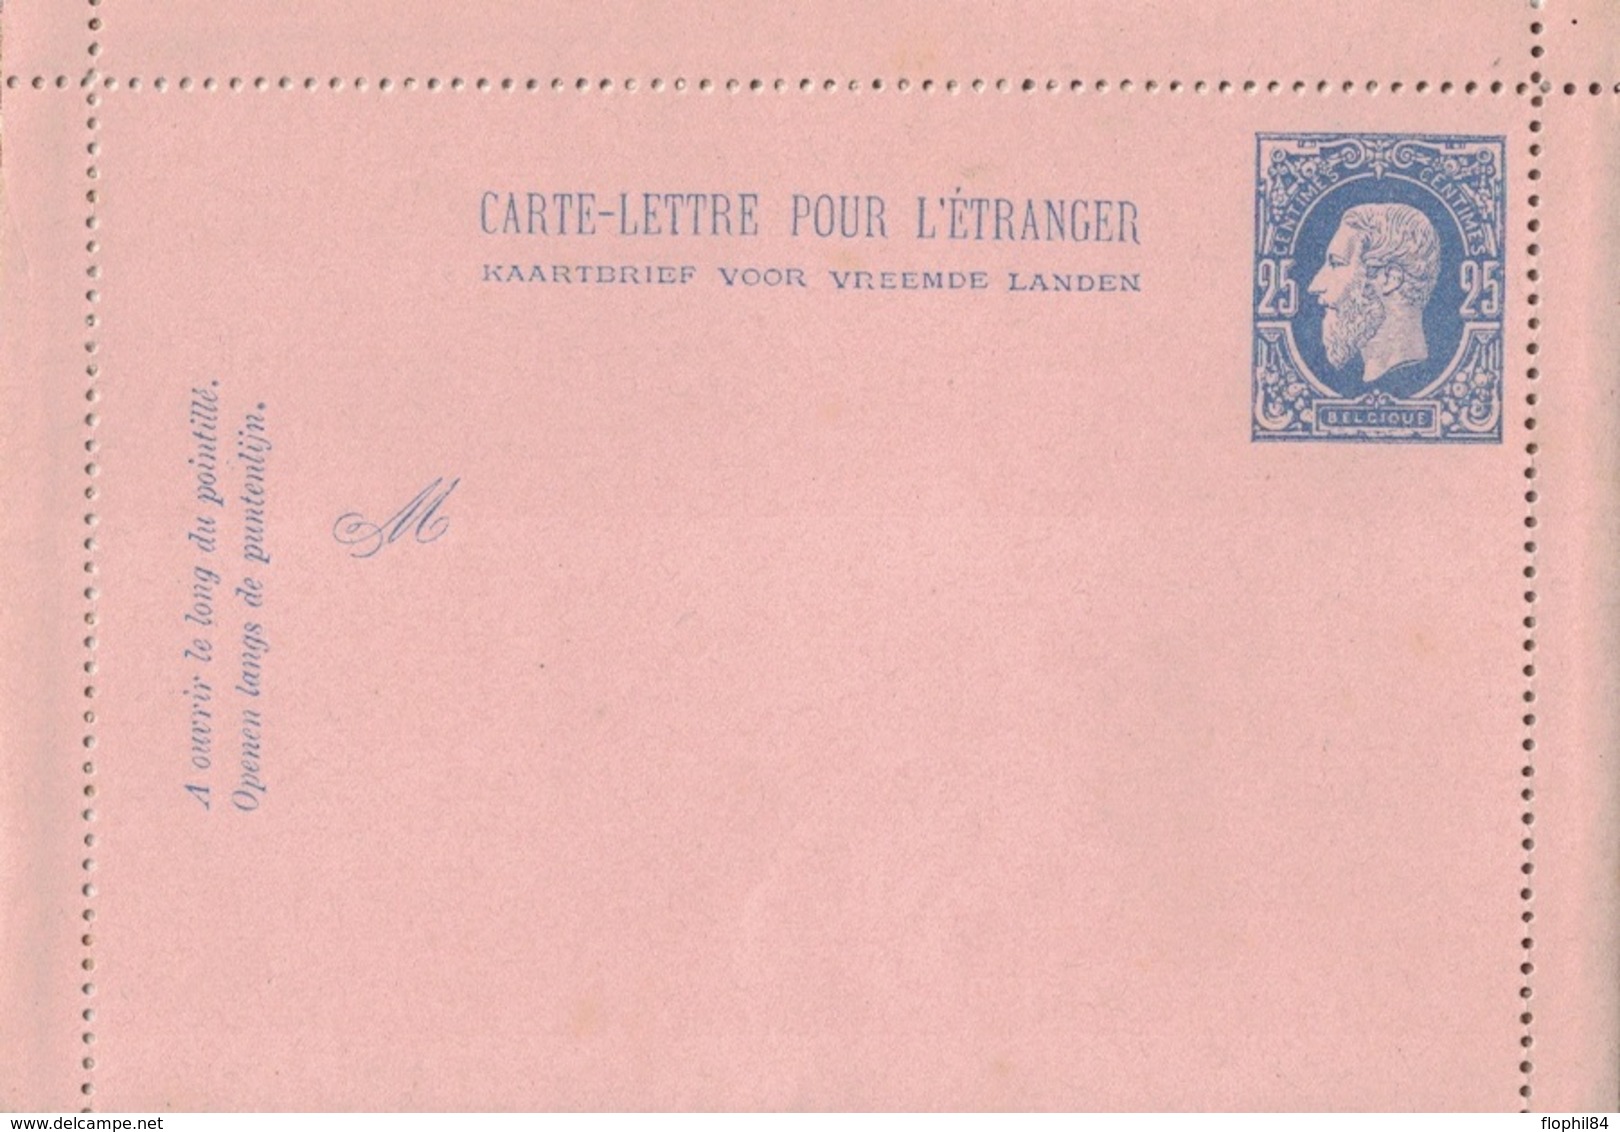 BELGIQUE - CARTE LETTRE NEUVE POUR L'ETRANGER - 25c BLEU. - Cartes-lettres